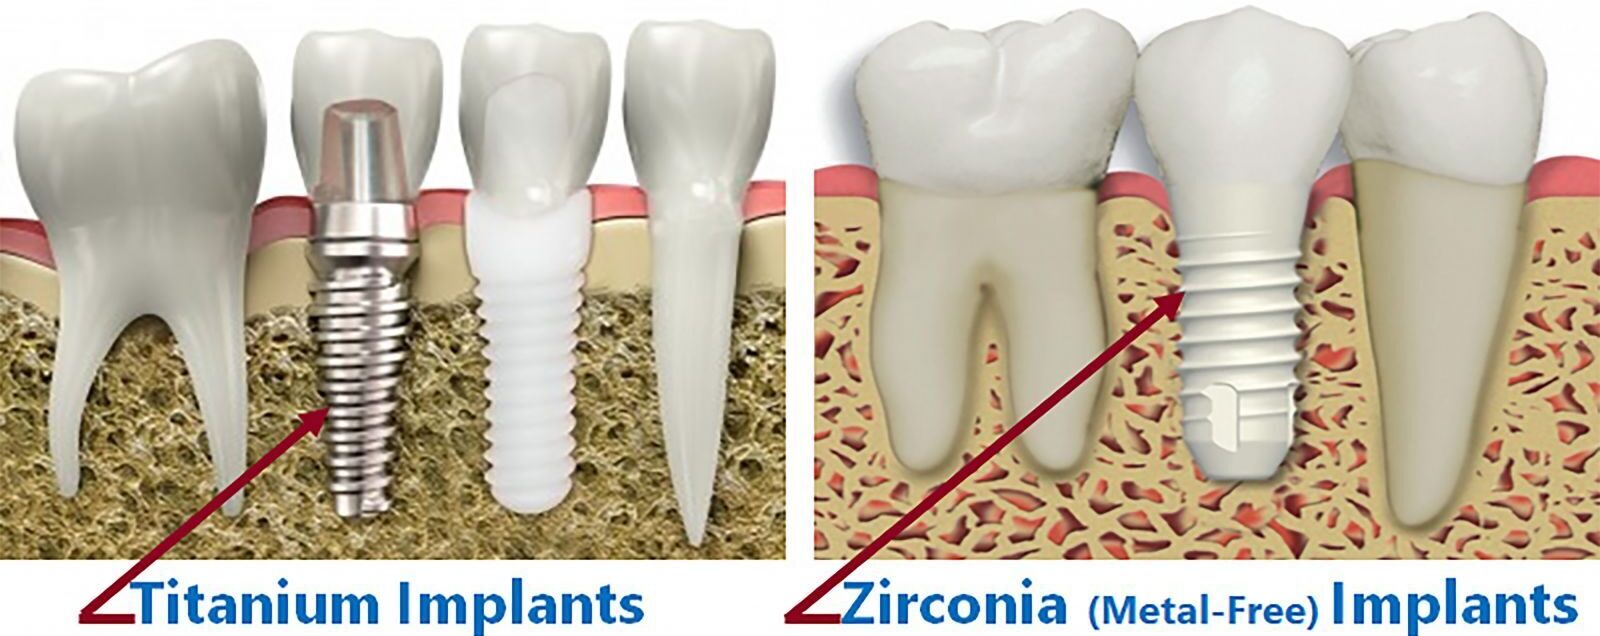 Zirconia and Titanium Implants comparison